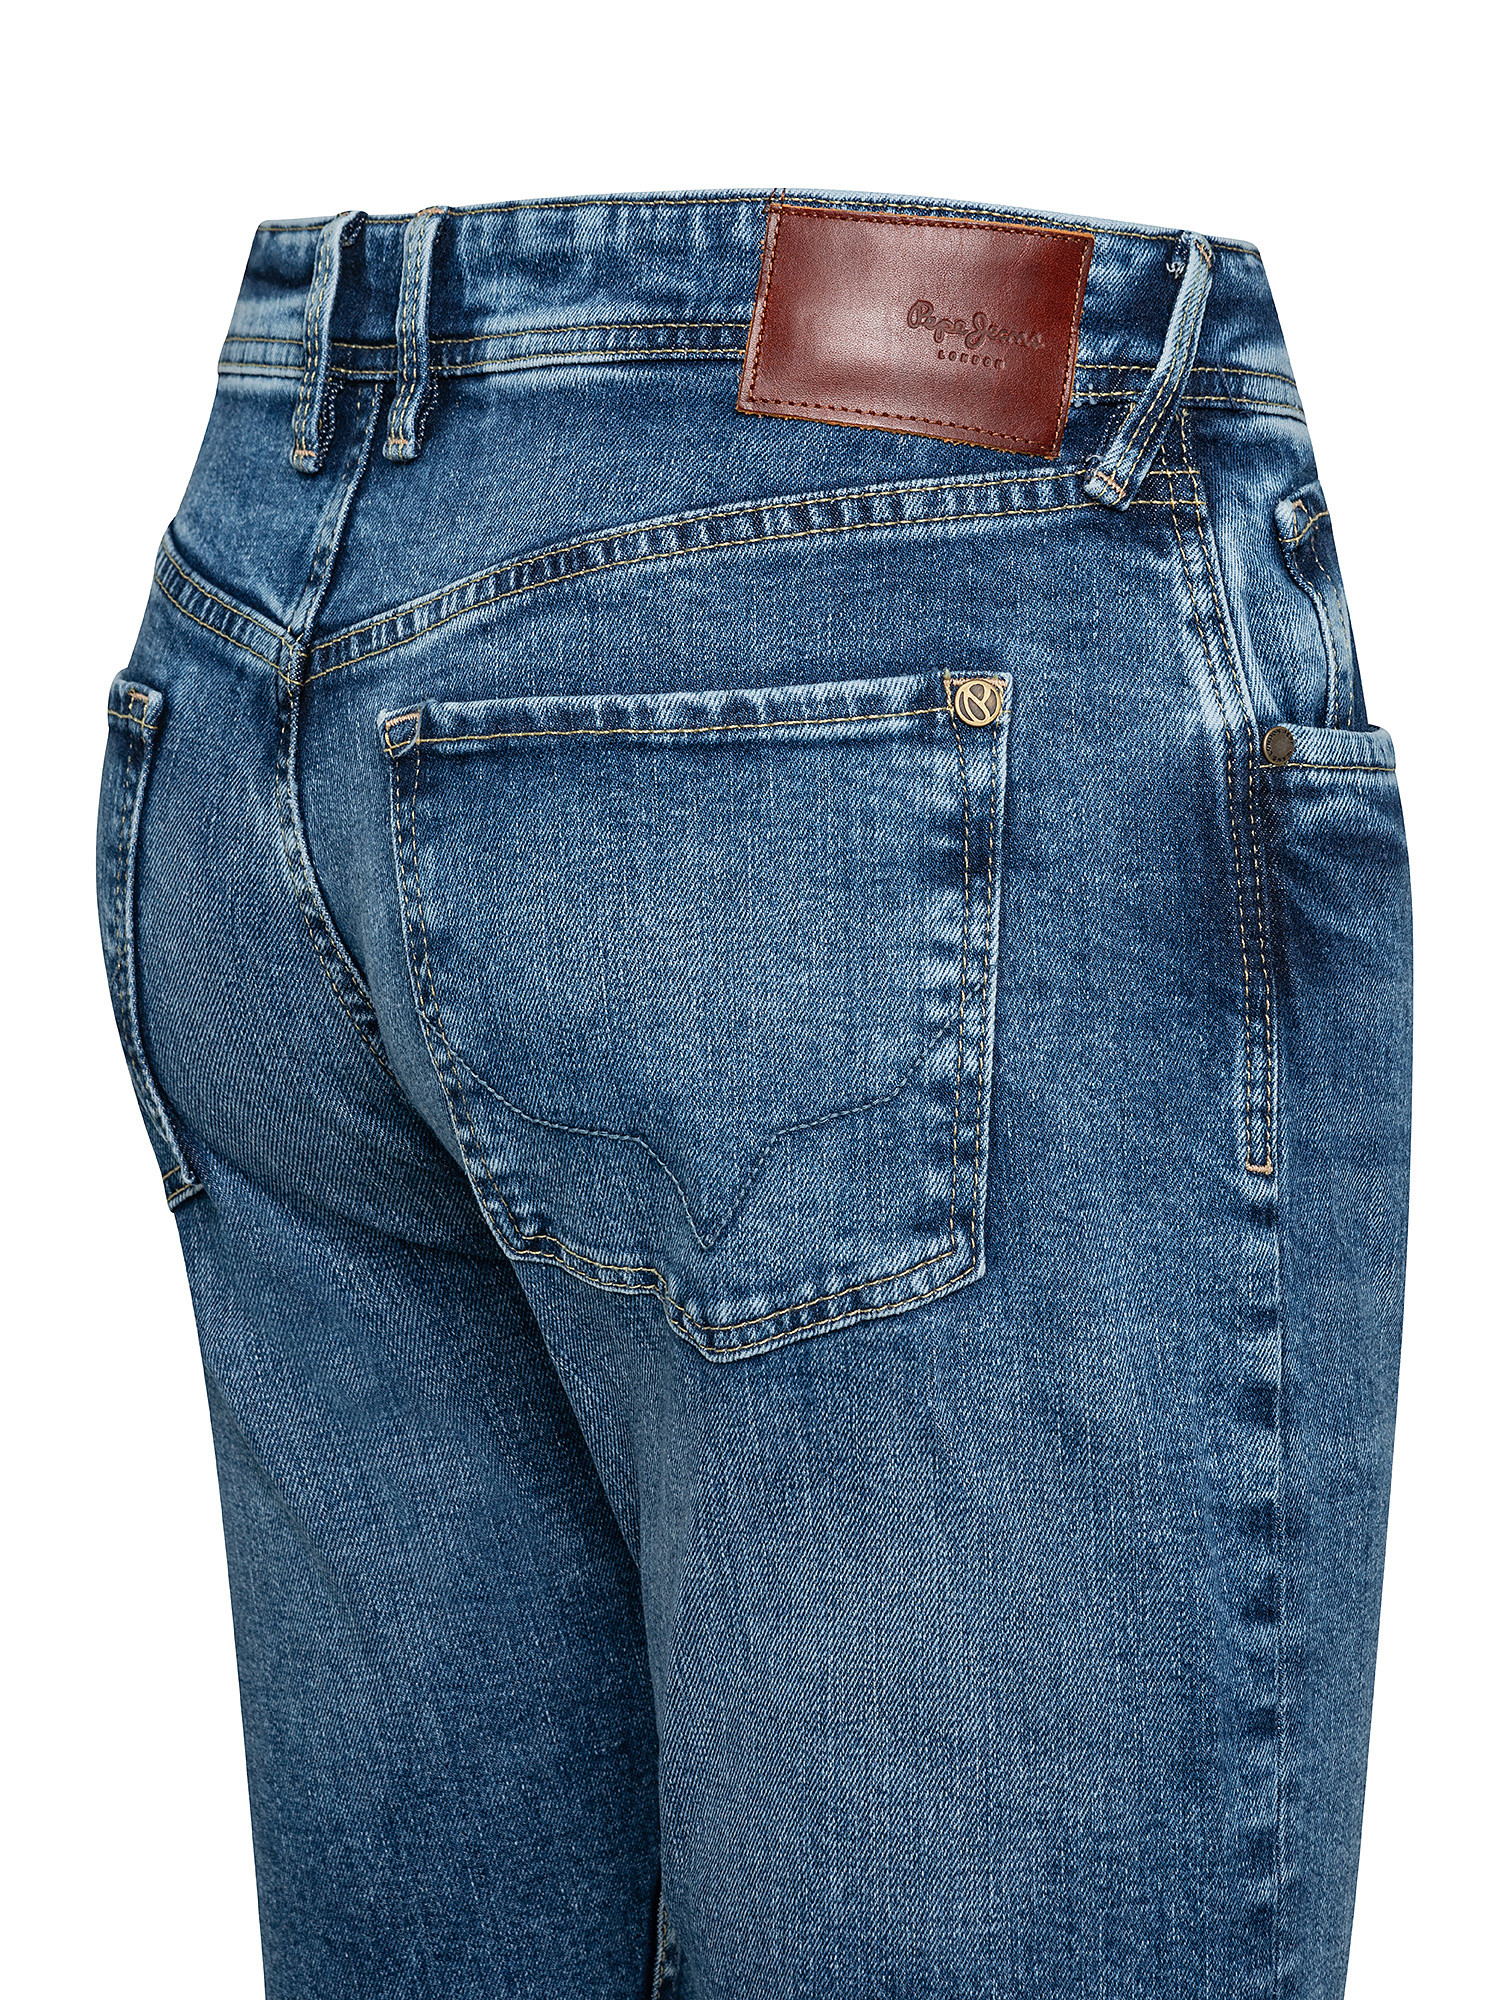 Five pocket jeans, Denim, large image number 2